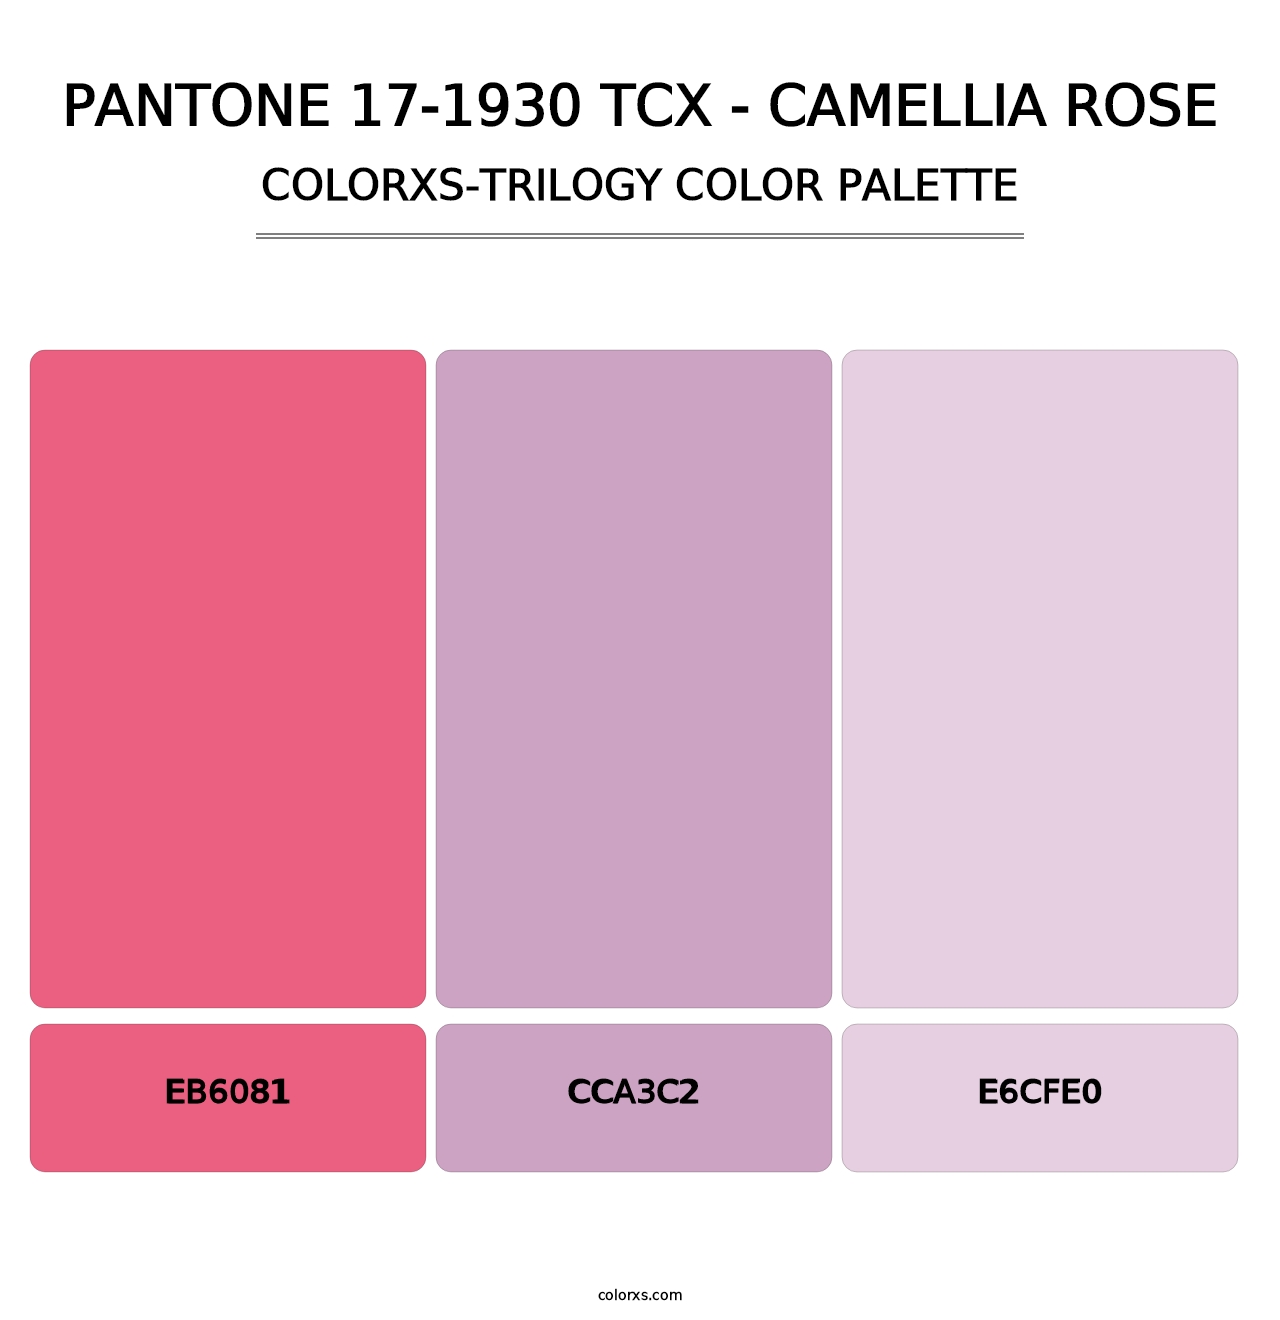 PANTONE 17-1930 TCX - Camellia Rose - Colorxs Trilogy Palette